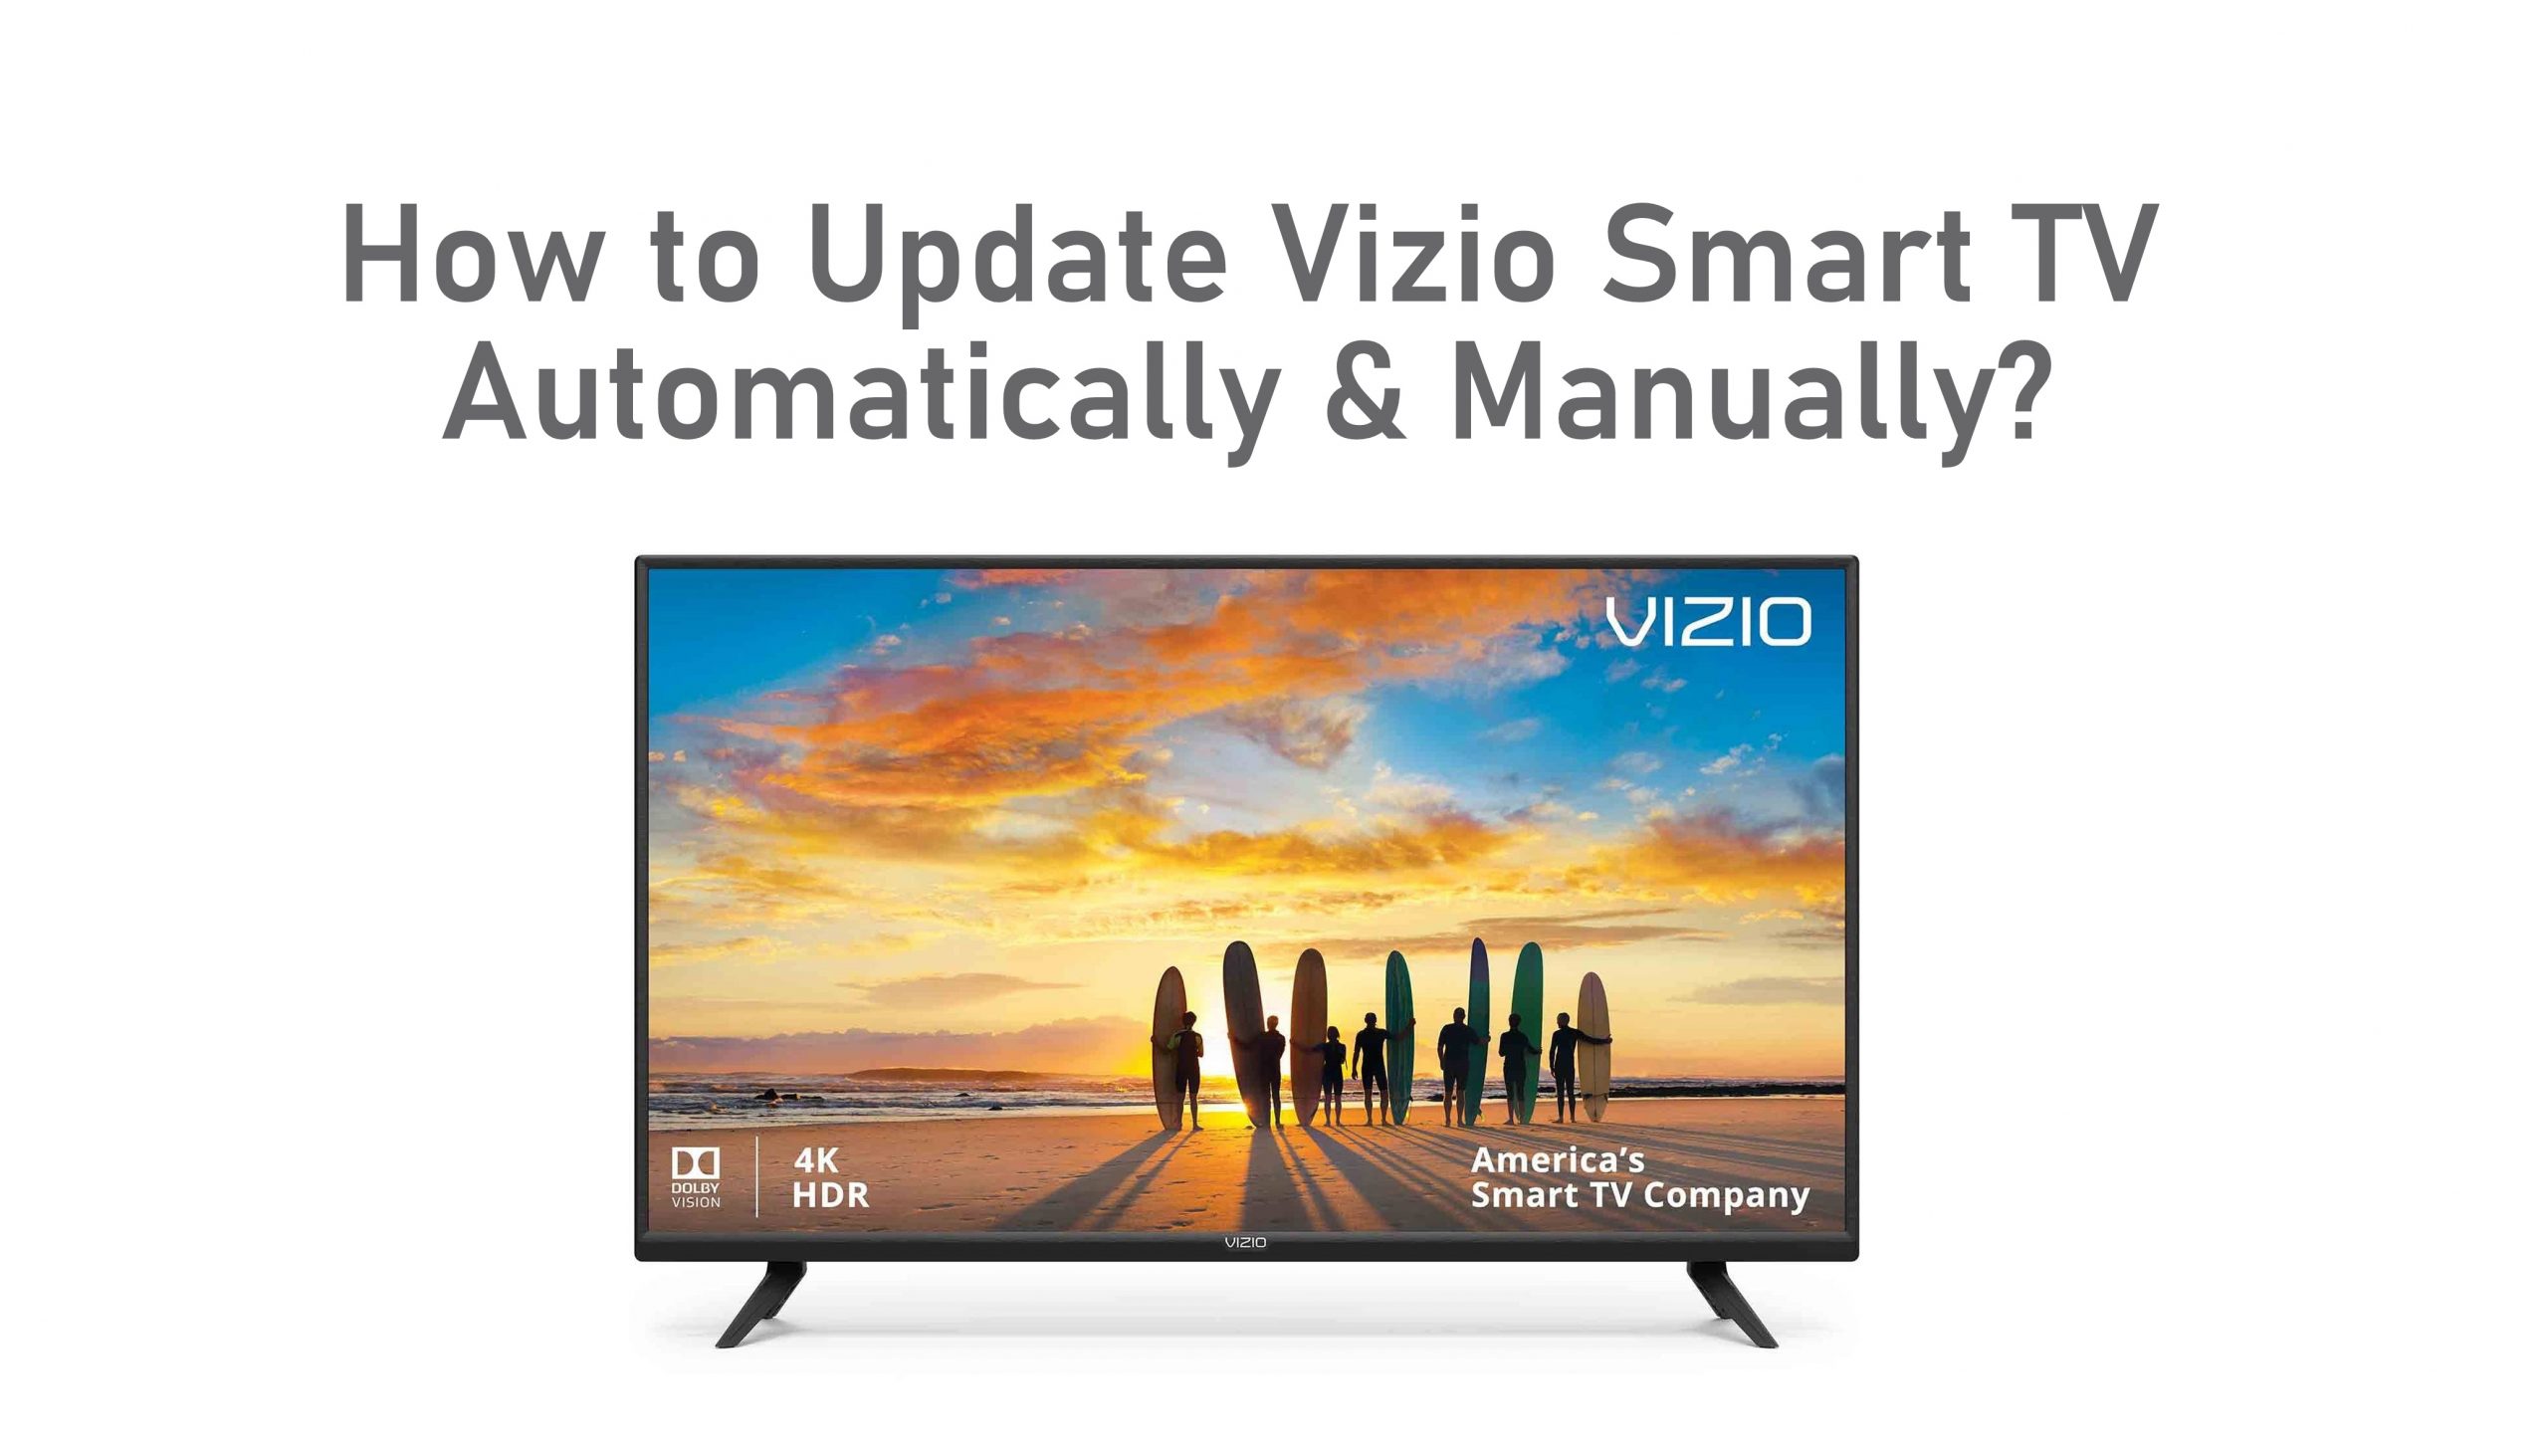 Nola eguneratu Vizio Smart TV automatikoki edo eskuz
